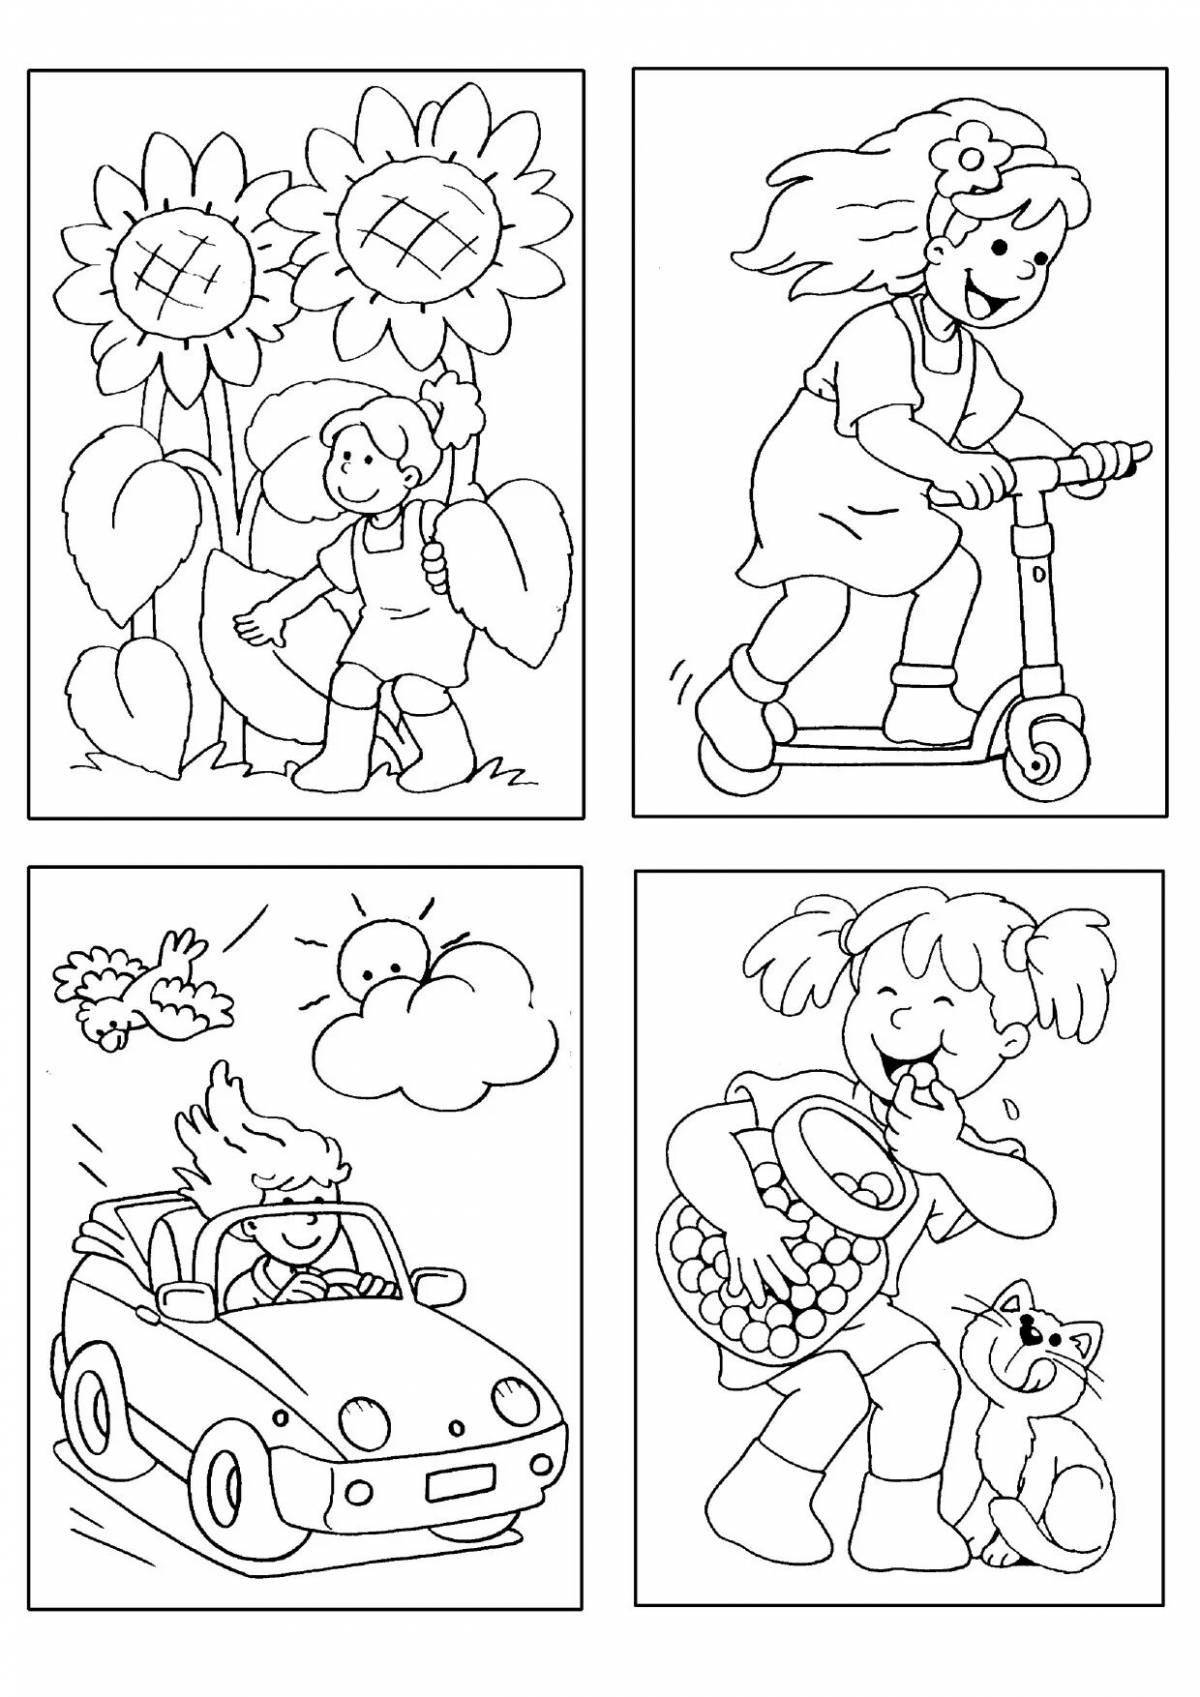 2 drawings per sheet for kids #15